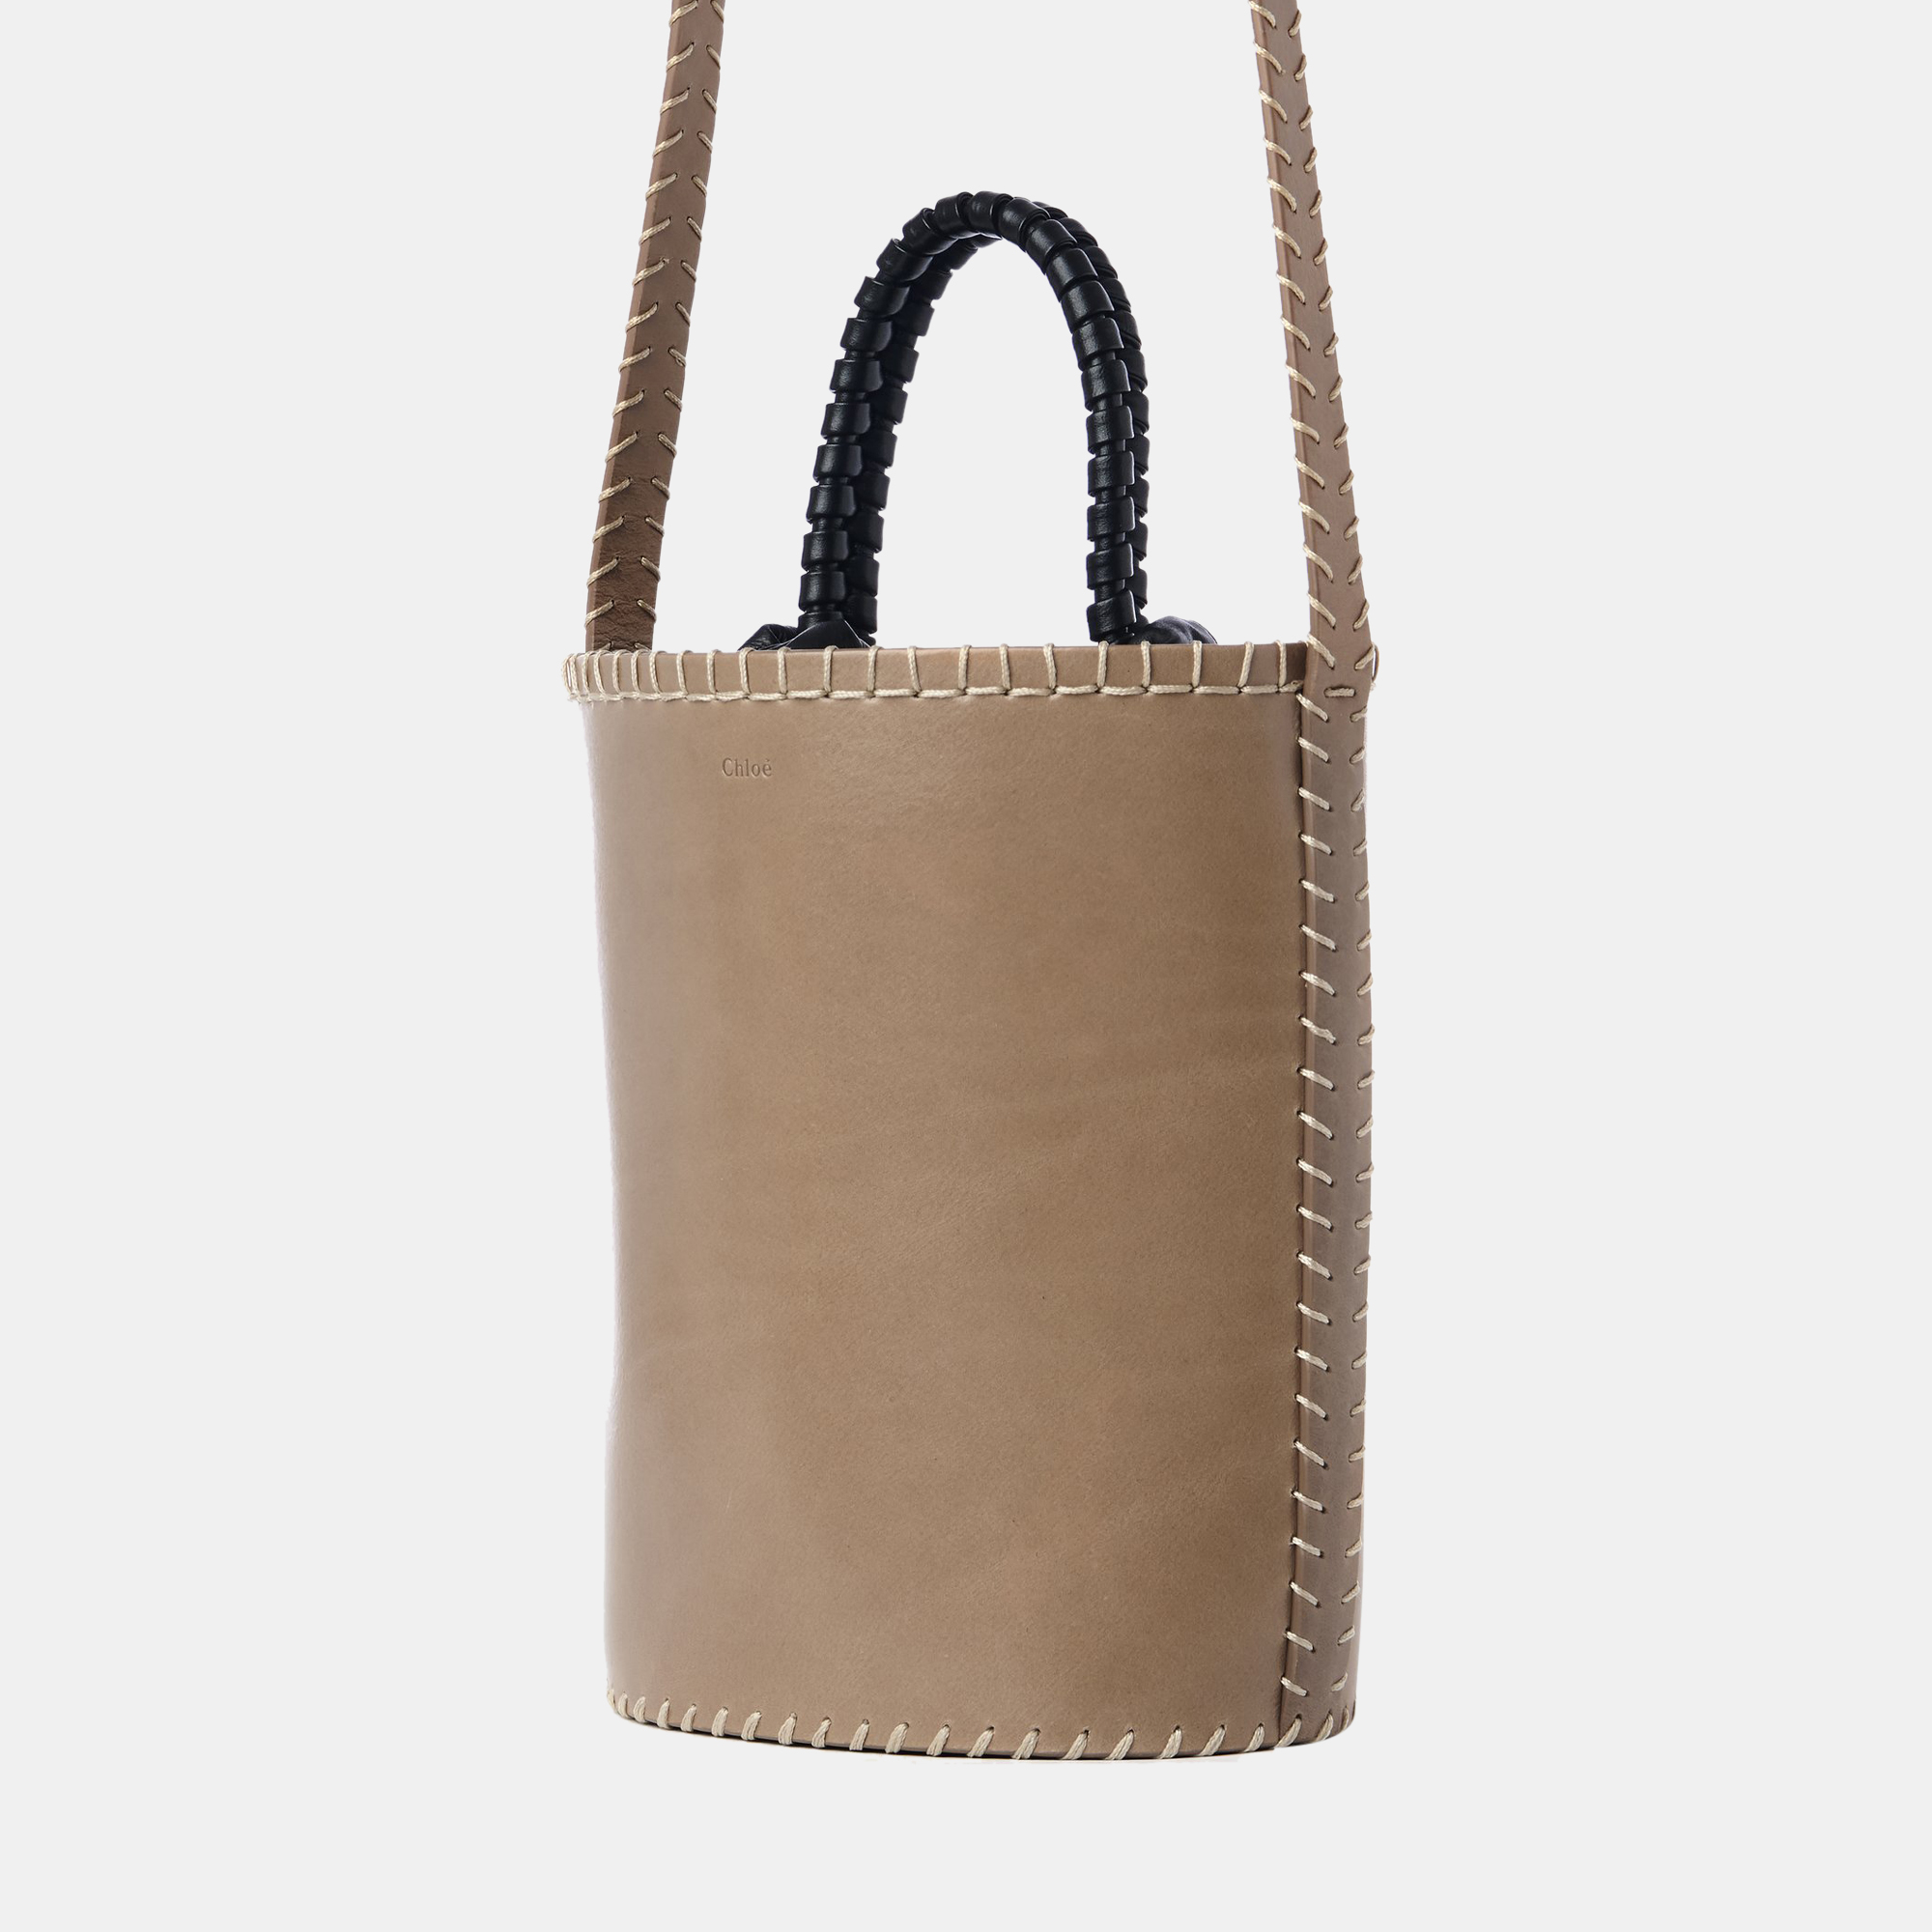 Chloe Brown & Black - Leather - Medium Bucket Shoulder Bag